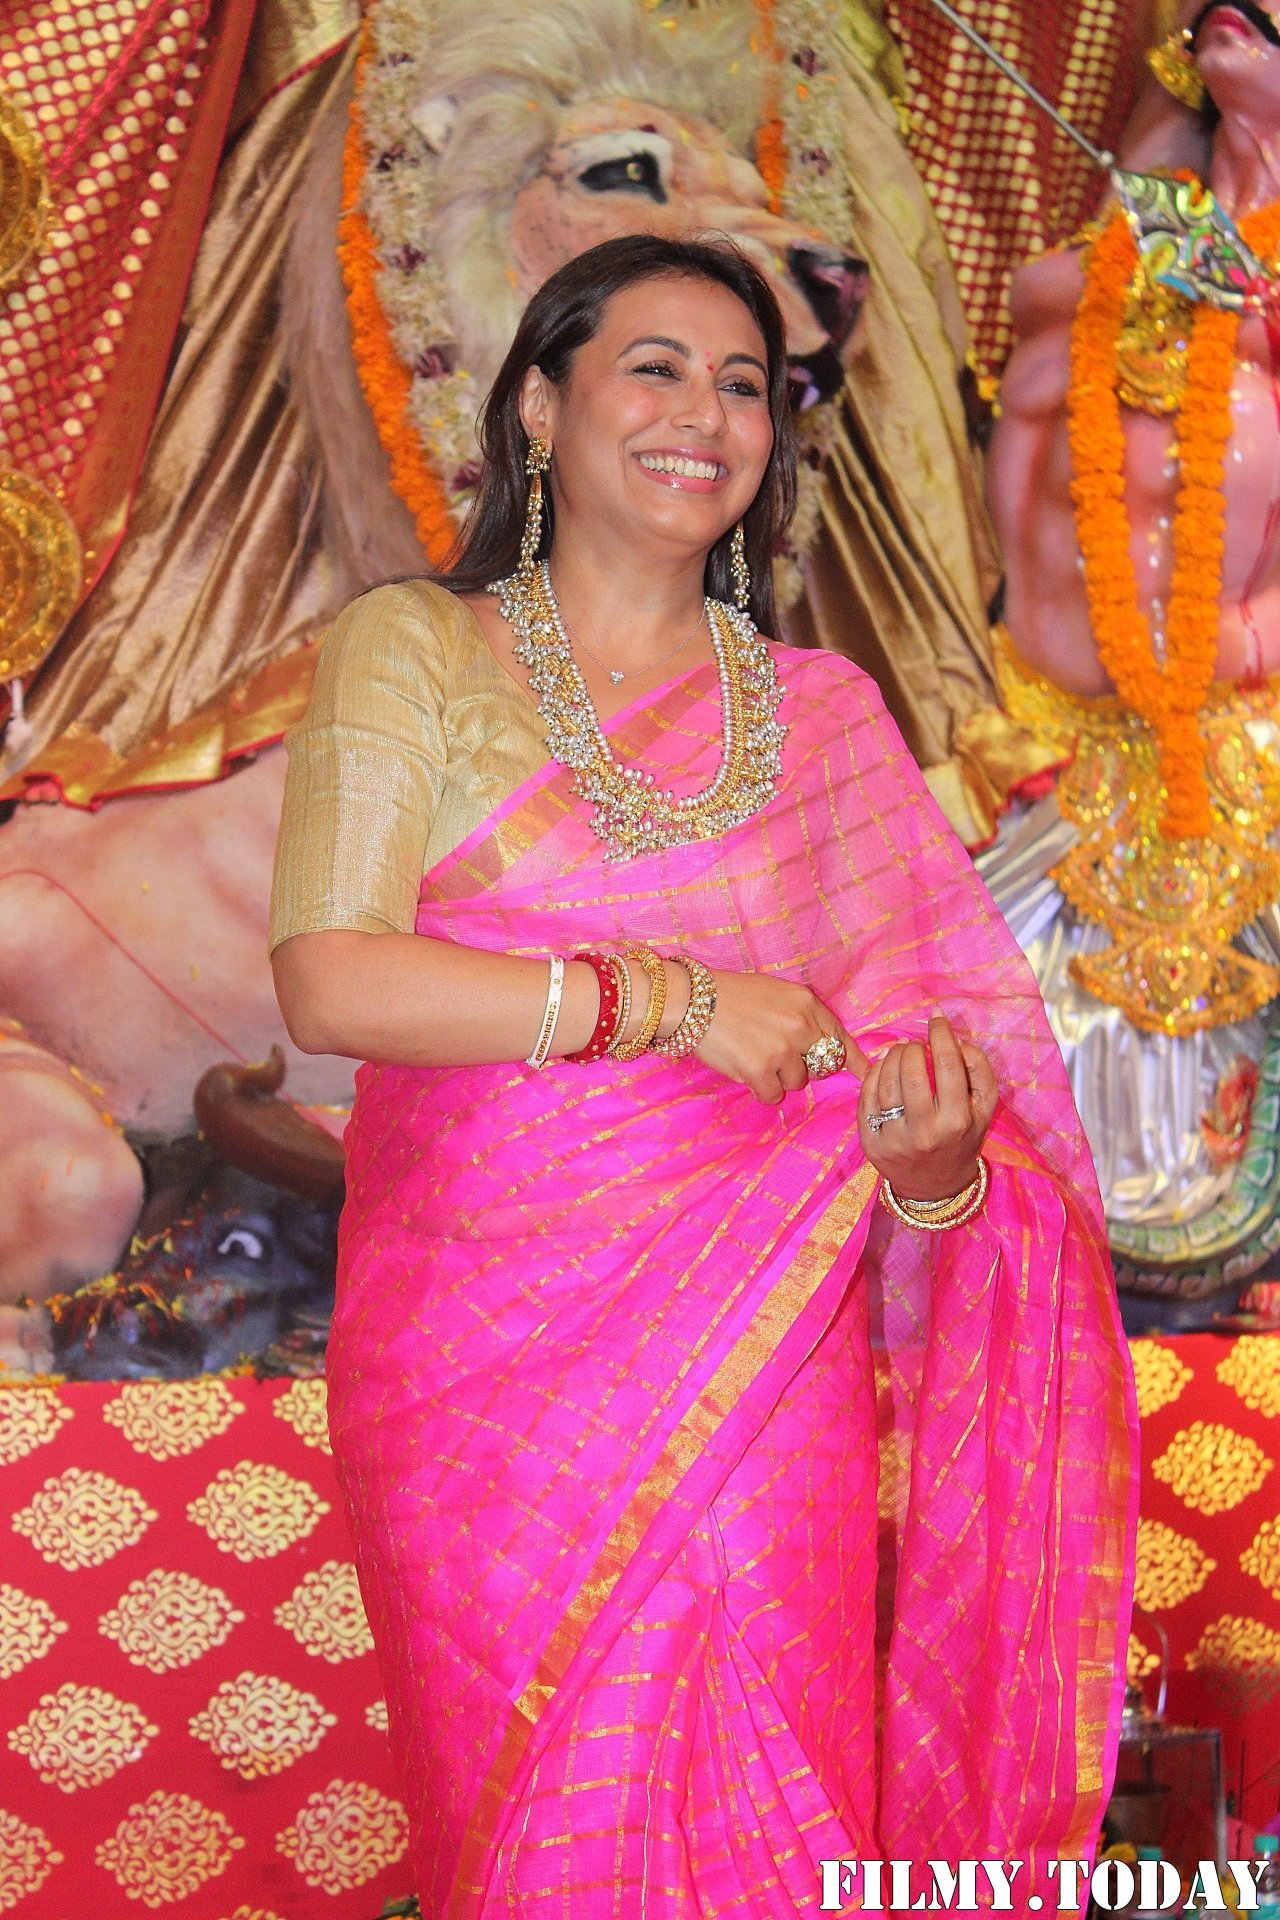 Rani Mukerji - Photos: Celebs At Durga Puja In Juhu | Picture 1690417